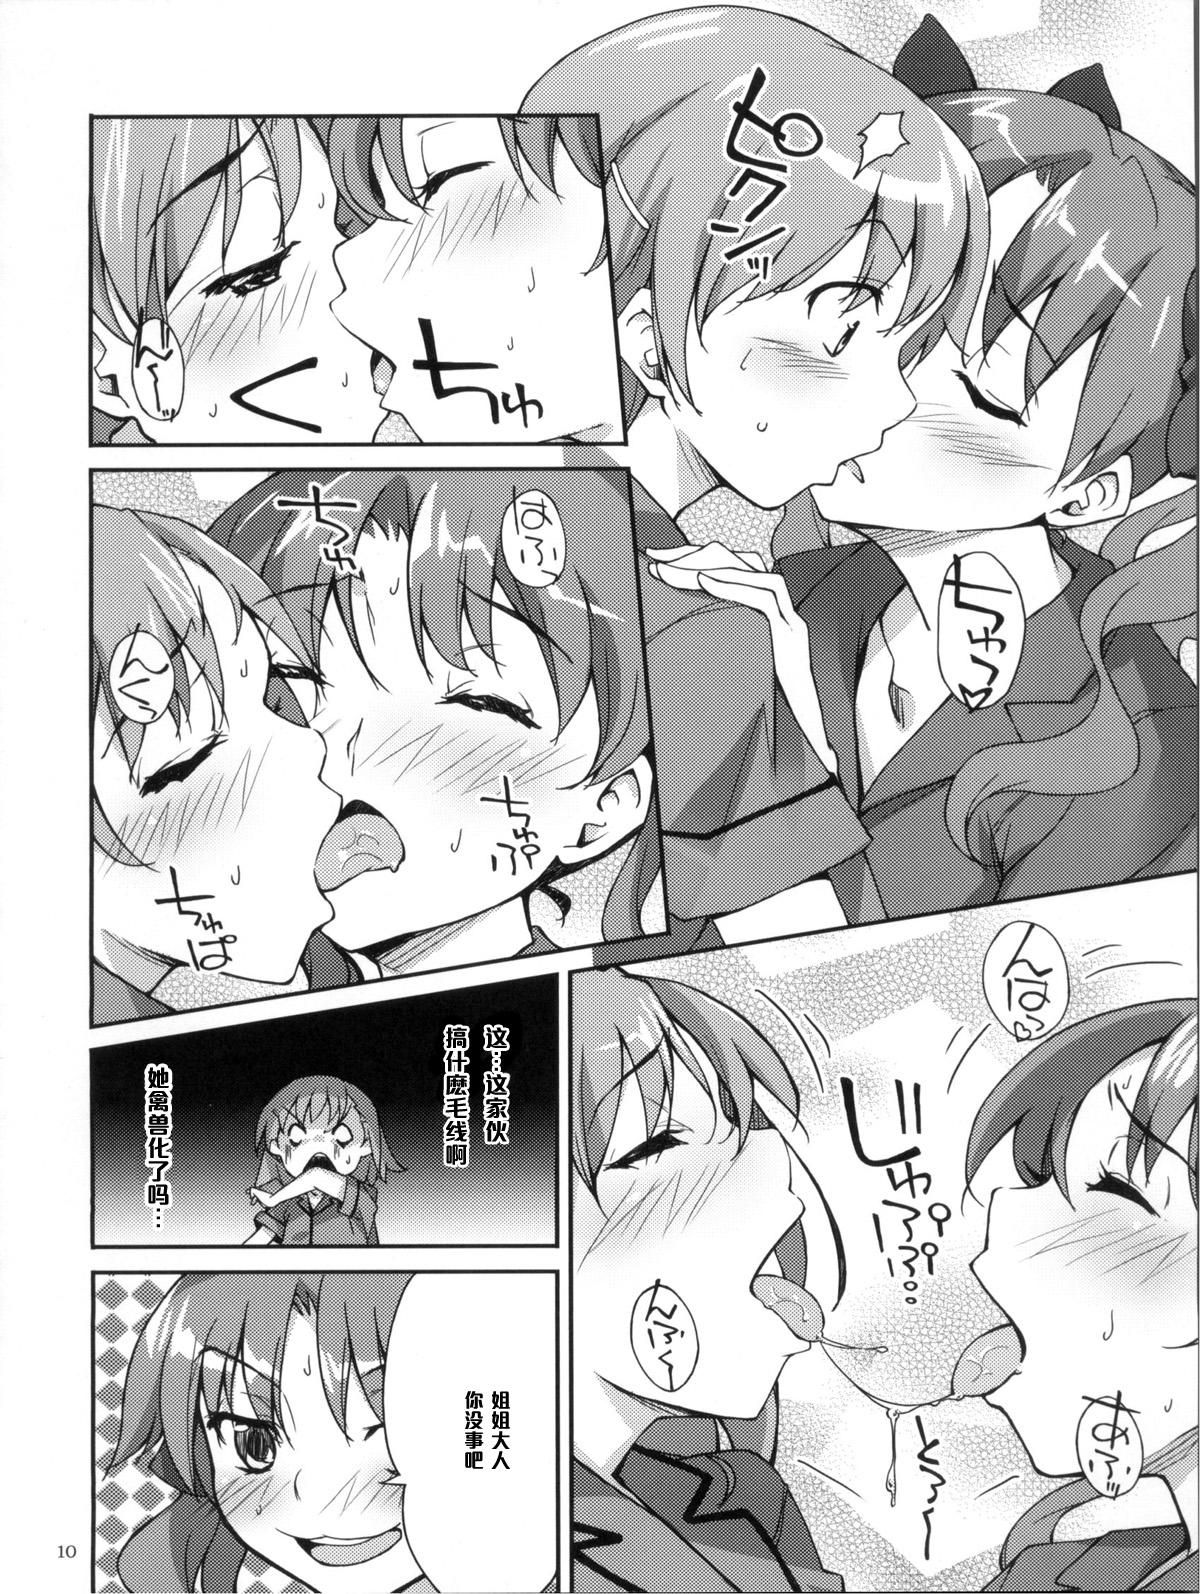 Ruiva Desu no!! 2 - Toaru kagaku no railgun Amatuer Sex - Page 10